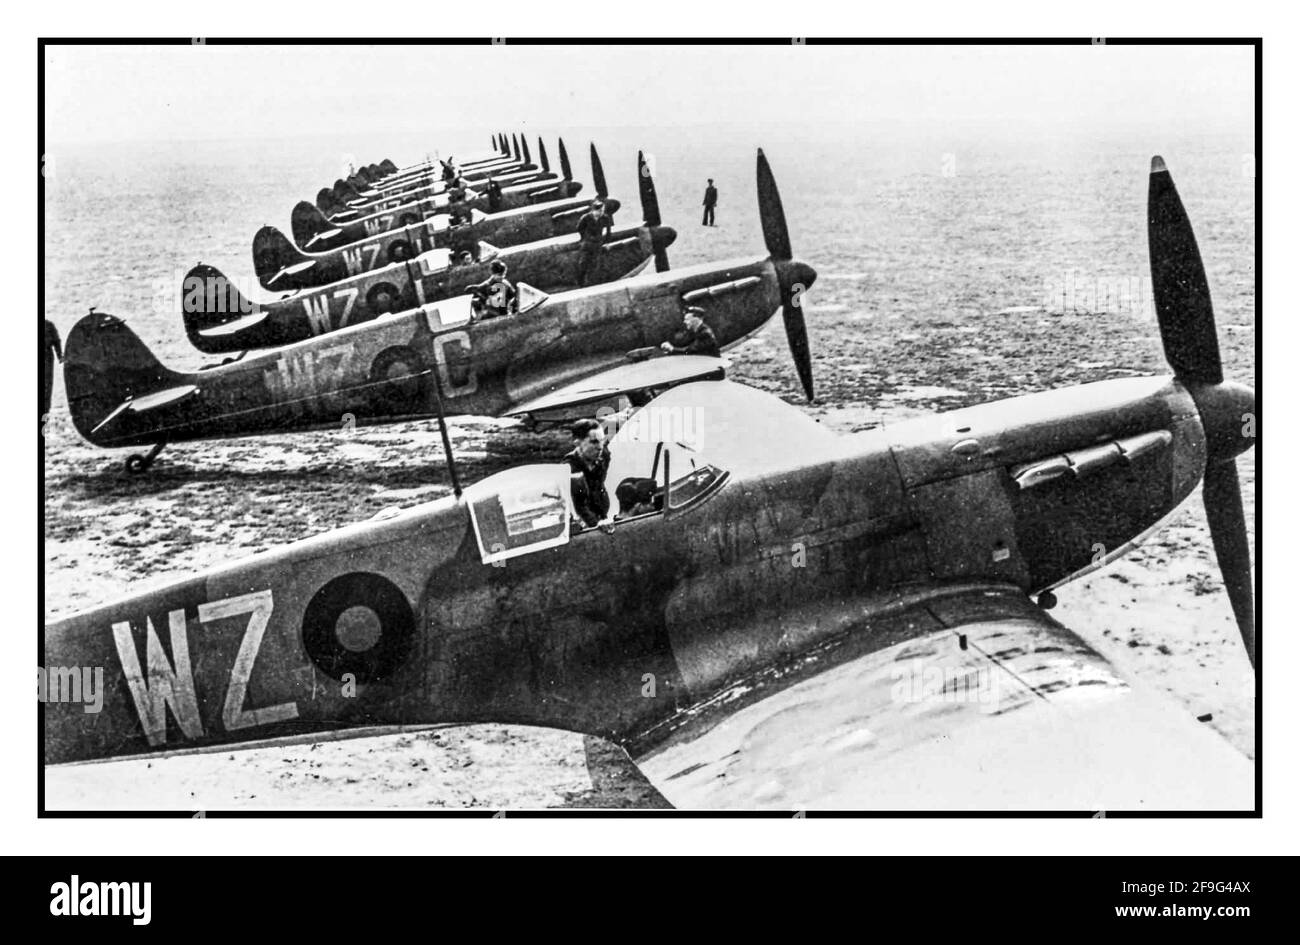 WW2 Spitfire Aircraft Mk 1. 19 Squadron RAF Duxford UK 1939 bataille d'Angleterre. Ligne symétrique parfaite d'avion de chasse Royal Airforce Spitfire, prêt pour le décollage pour défendre la Grande-Bretagne contre les attaques terroristes de la Luftwaffe allemande de la Seconde Guerre mondiale Banque D'Images